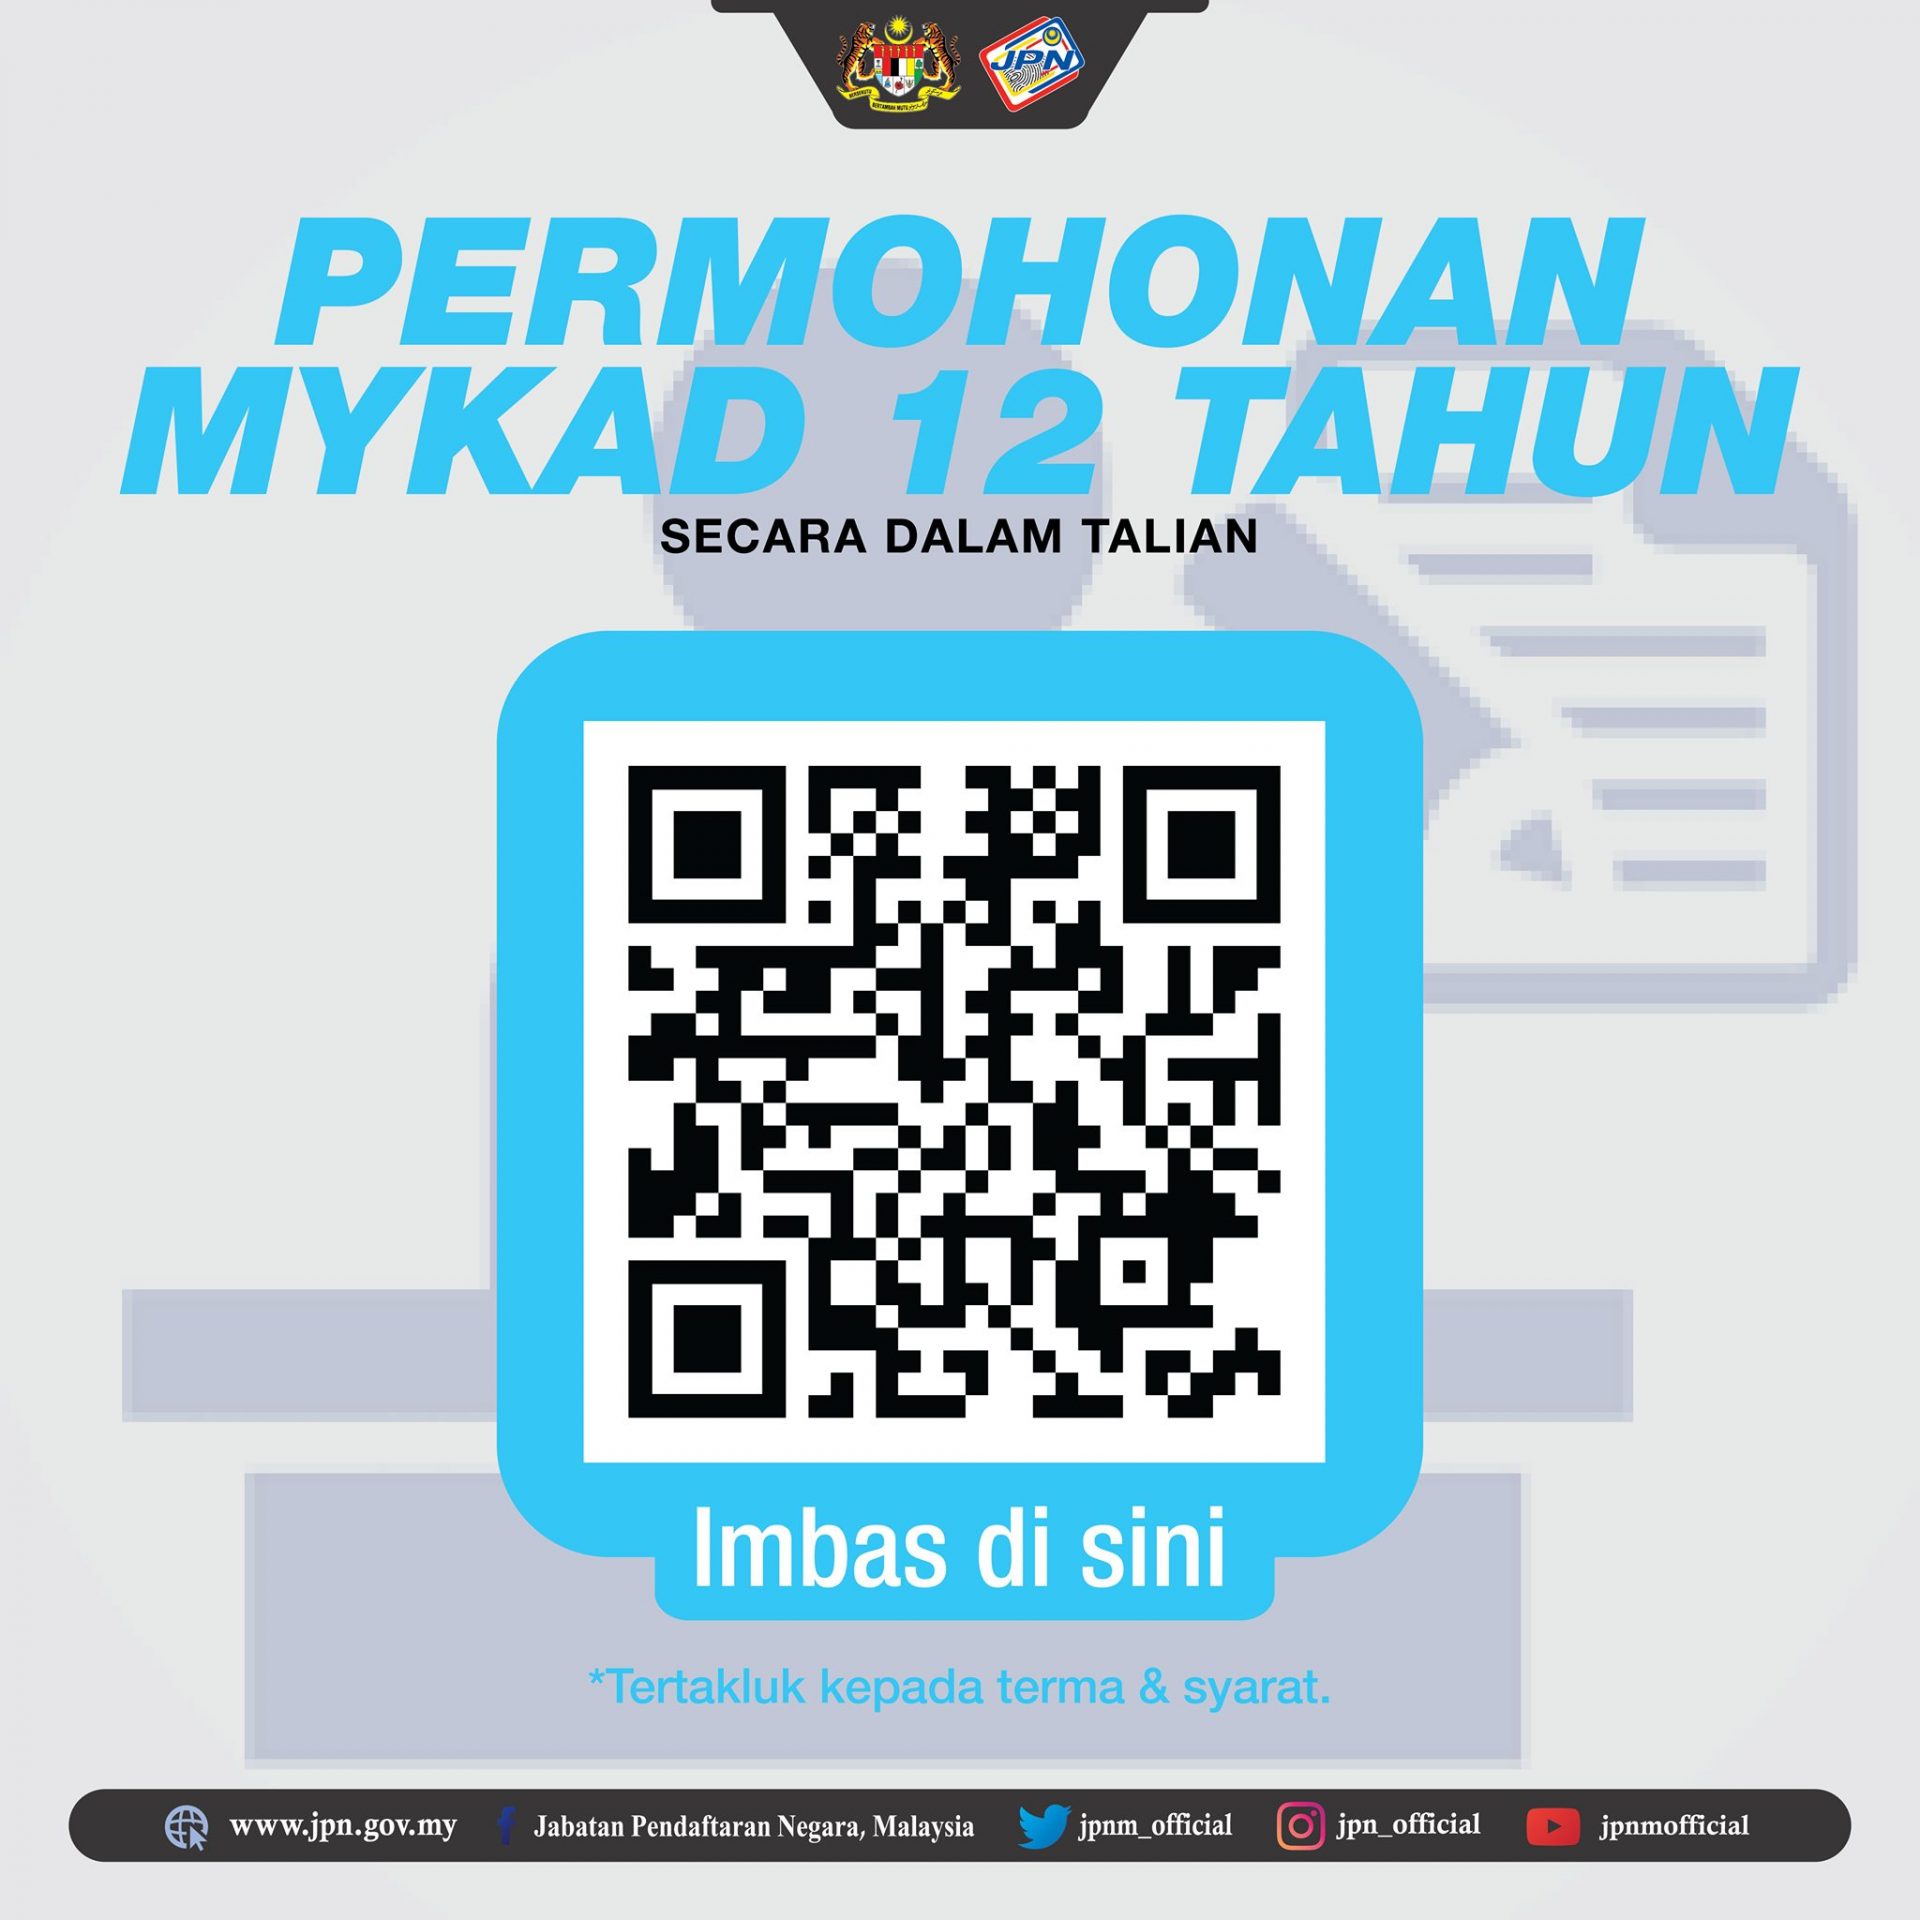 Permohonan MyKad Kanak-Kanak Berumur 12 Tahun Secara Online. Ini Caranya